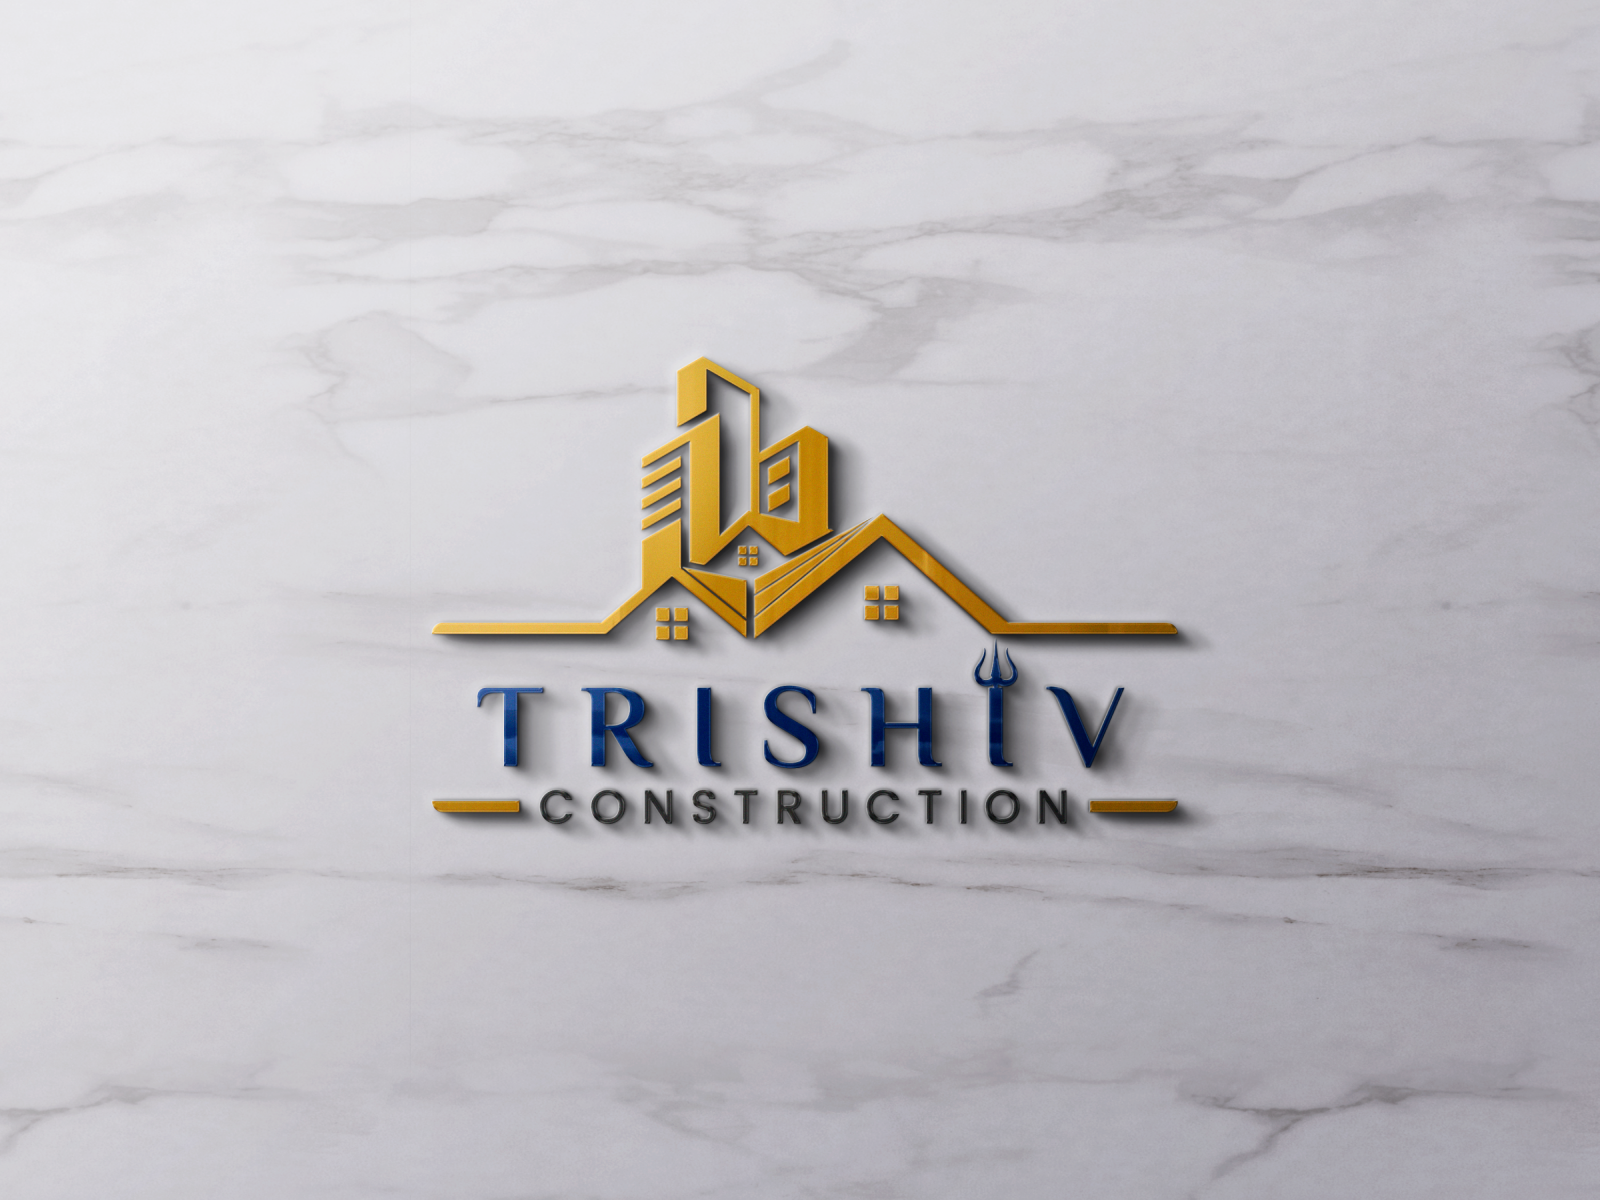 Trishiv construction logo